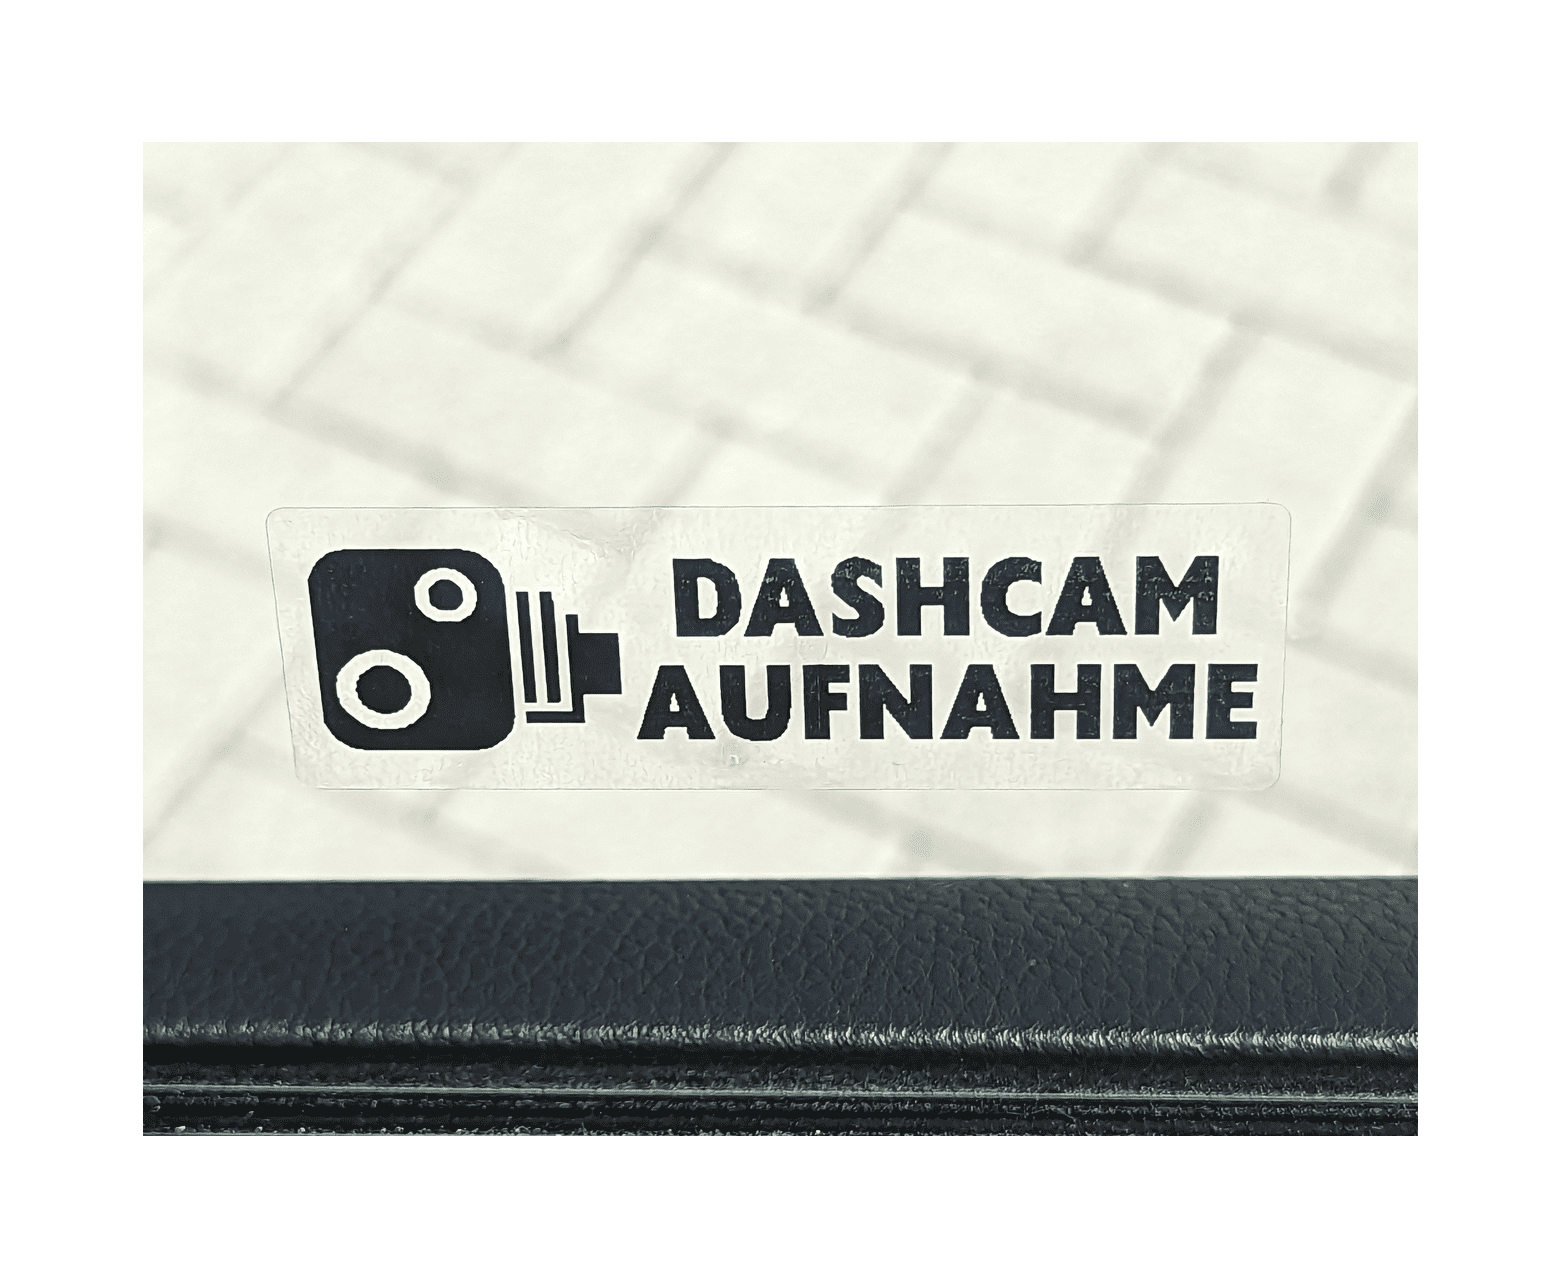 Autosticker Dashcam Aufnahme schwarz- 76x25mm - Fensterinnenseite